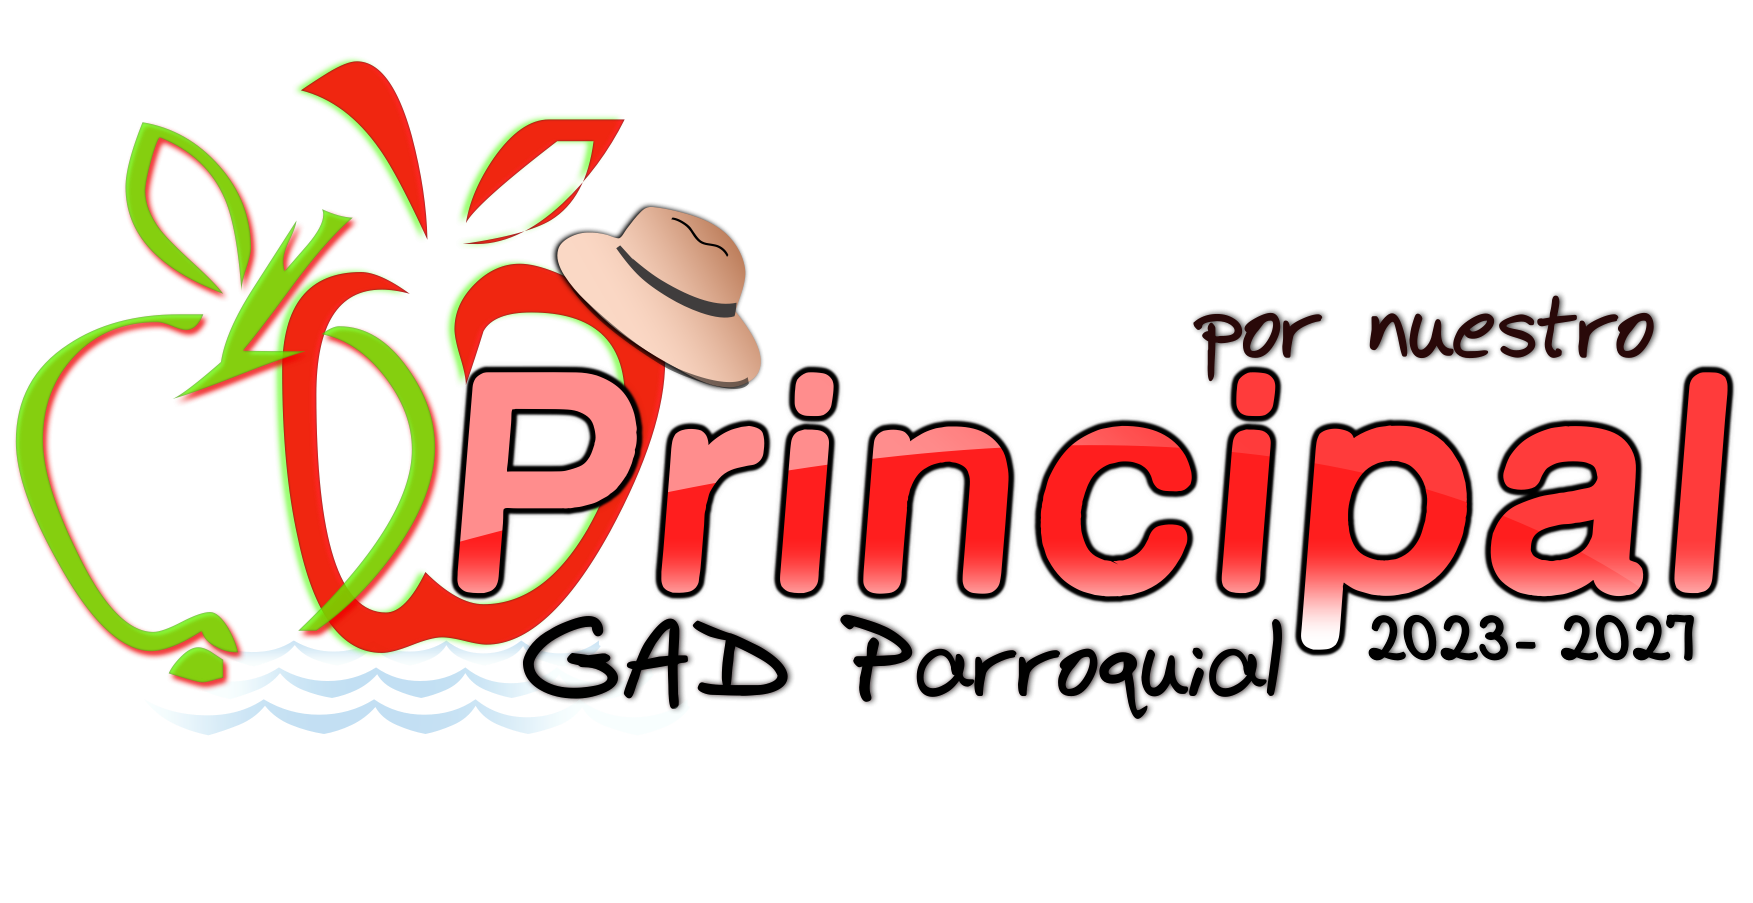 Logo for GAD Parroquial Principal